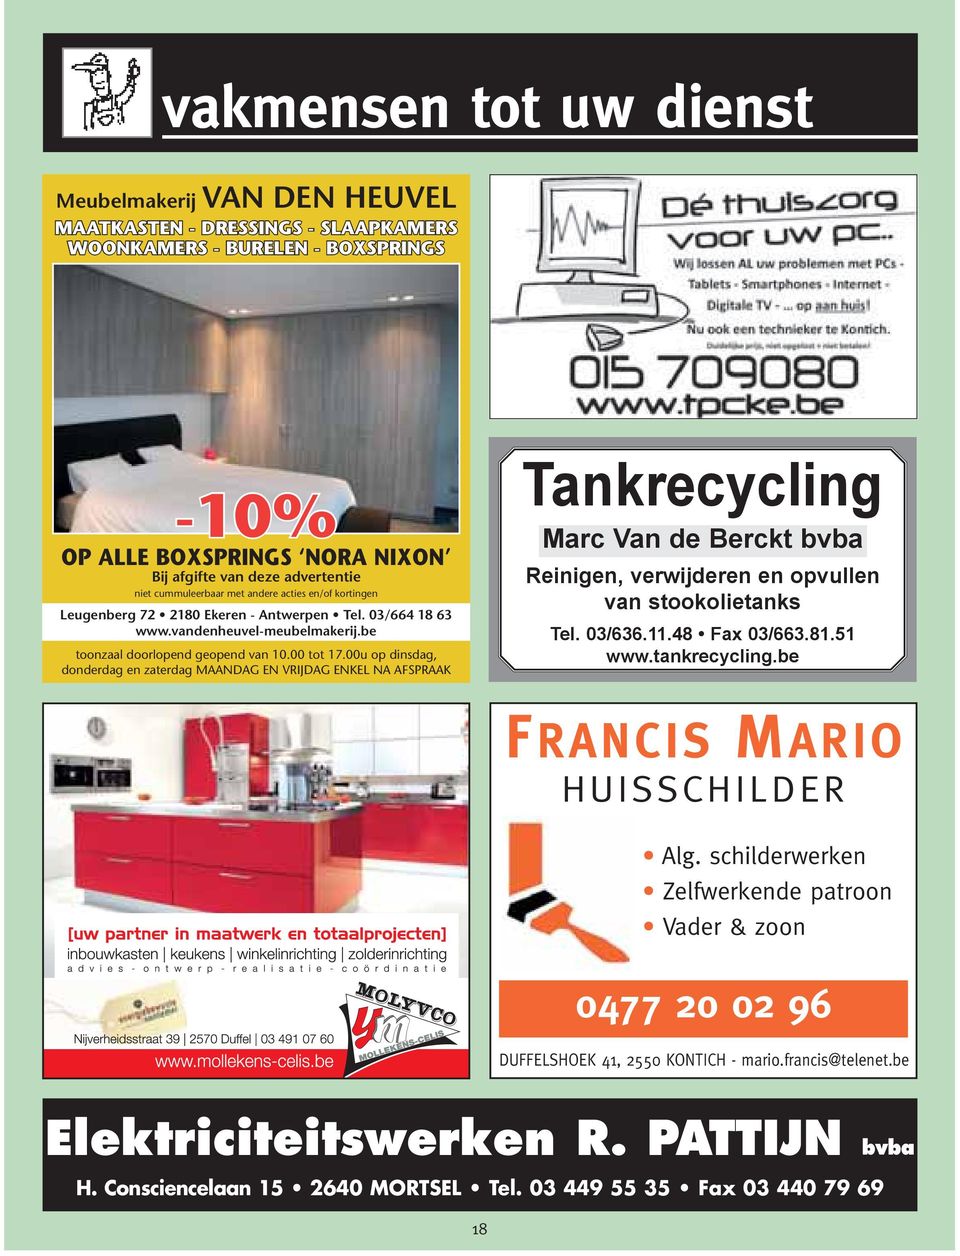 00u op dinsdag, donderdag en zaterdag MAANDAG EN VRIJDAG ENKEL NA AFSPRAAK Tankrecycling Marc Van de Berckt bvba Reinigen, verwijderen en opvullen van stookolietanks Tel. 03/636.11.48 Fax 03/663.81.